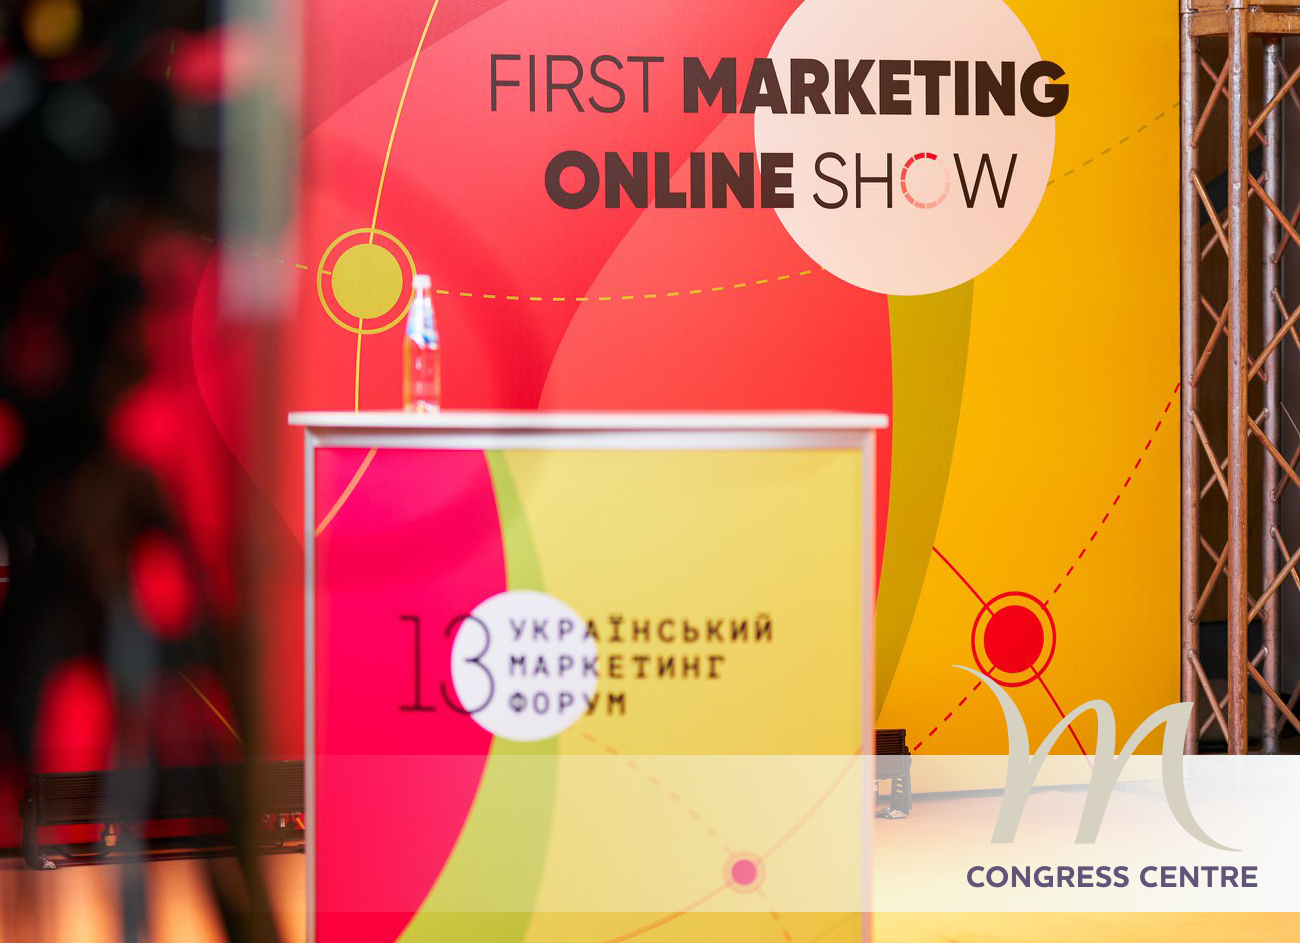 13-й Украинский Маркетинг-форум в Mercure Congress Centre